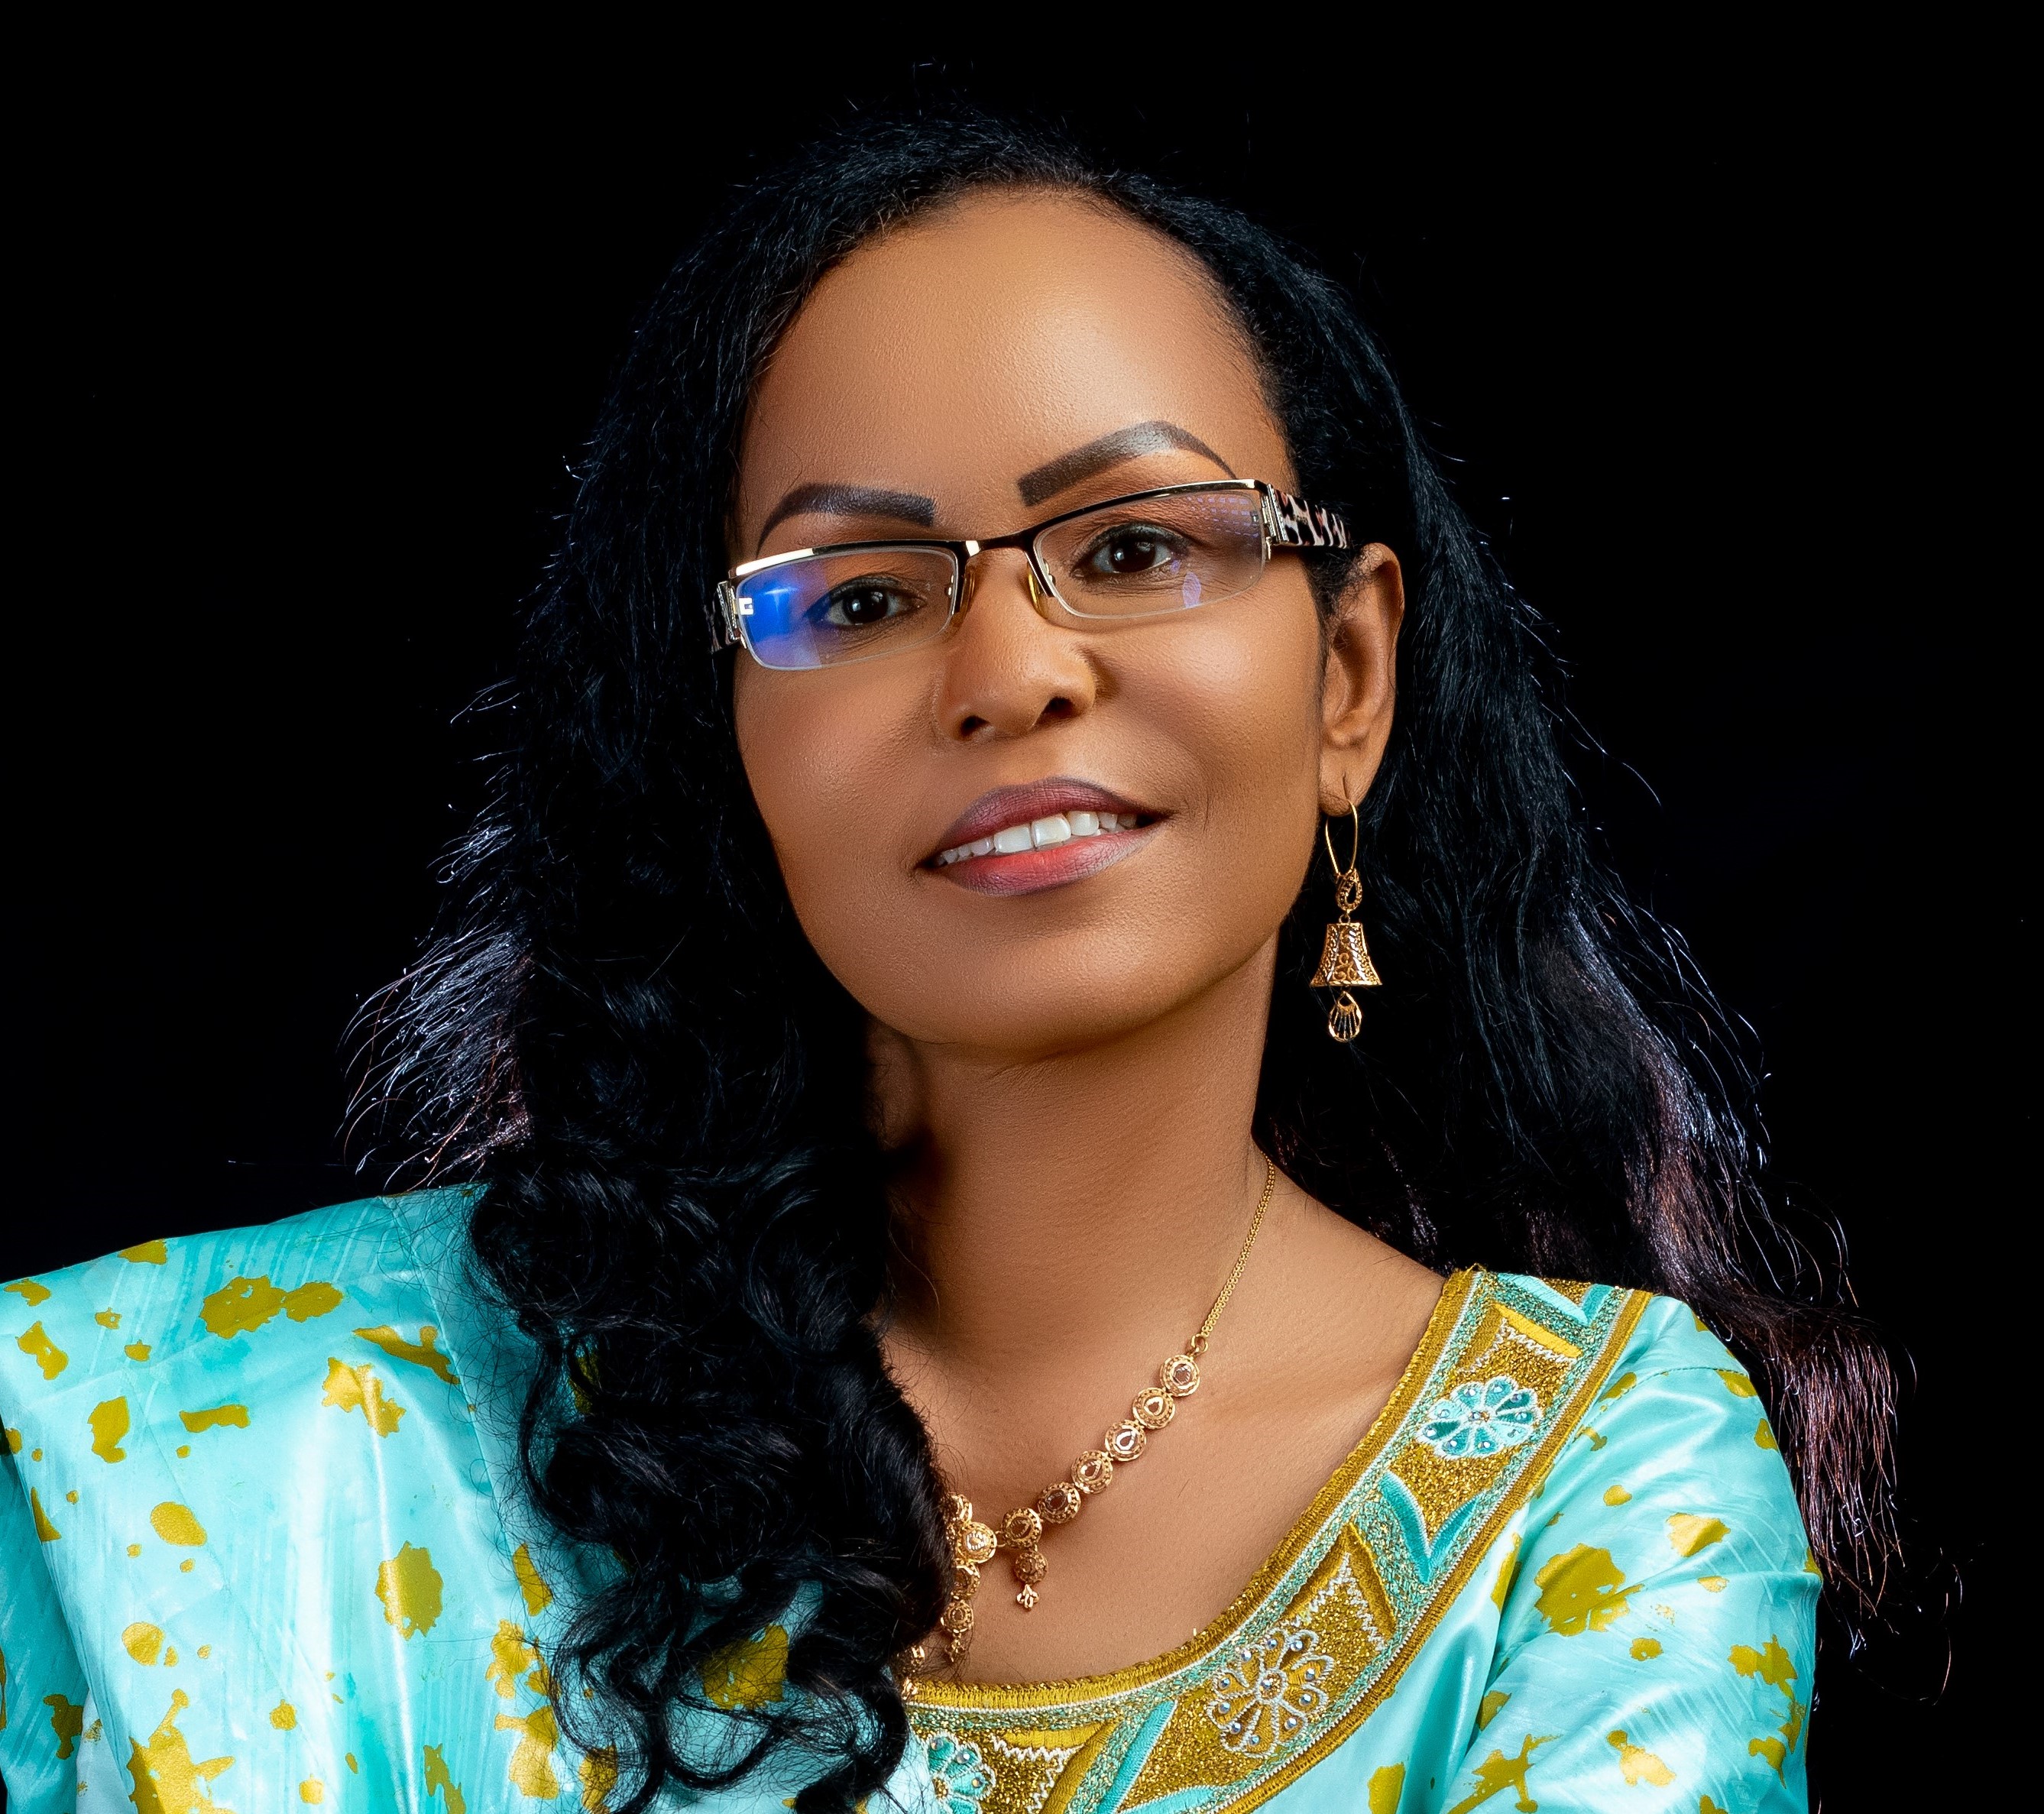 Mme Fatima Haram Acyl, vice-Présidente la Commission de la CEMAC : « La stratégie de promotion de partenariat interafricain choisie par le Royaume est appréciable »